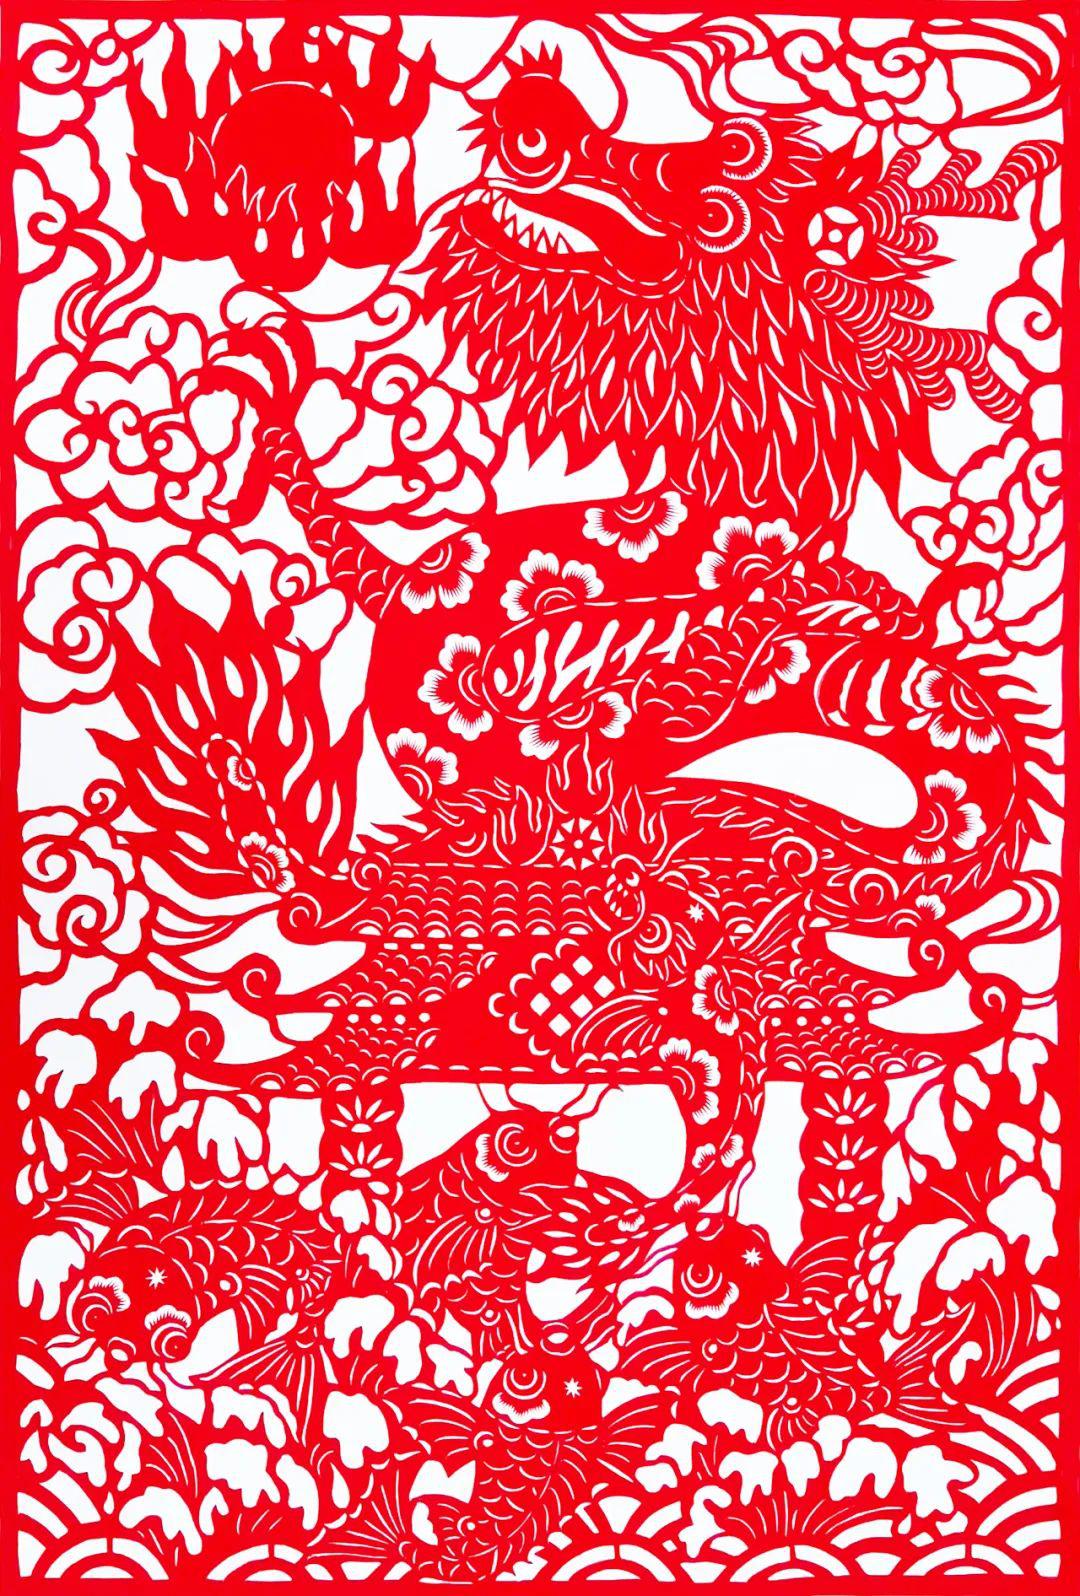 中国民间剪纸微刊《百年献瑞迎新年》全国龙文化剪纸精品展览 图301